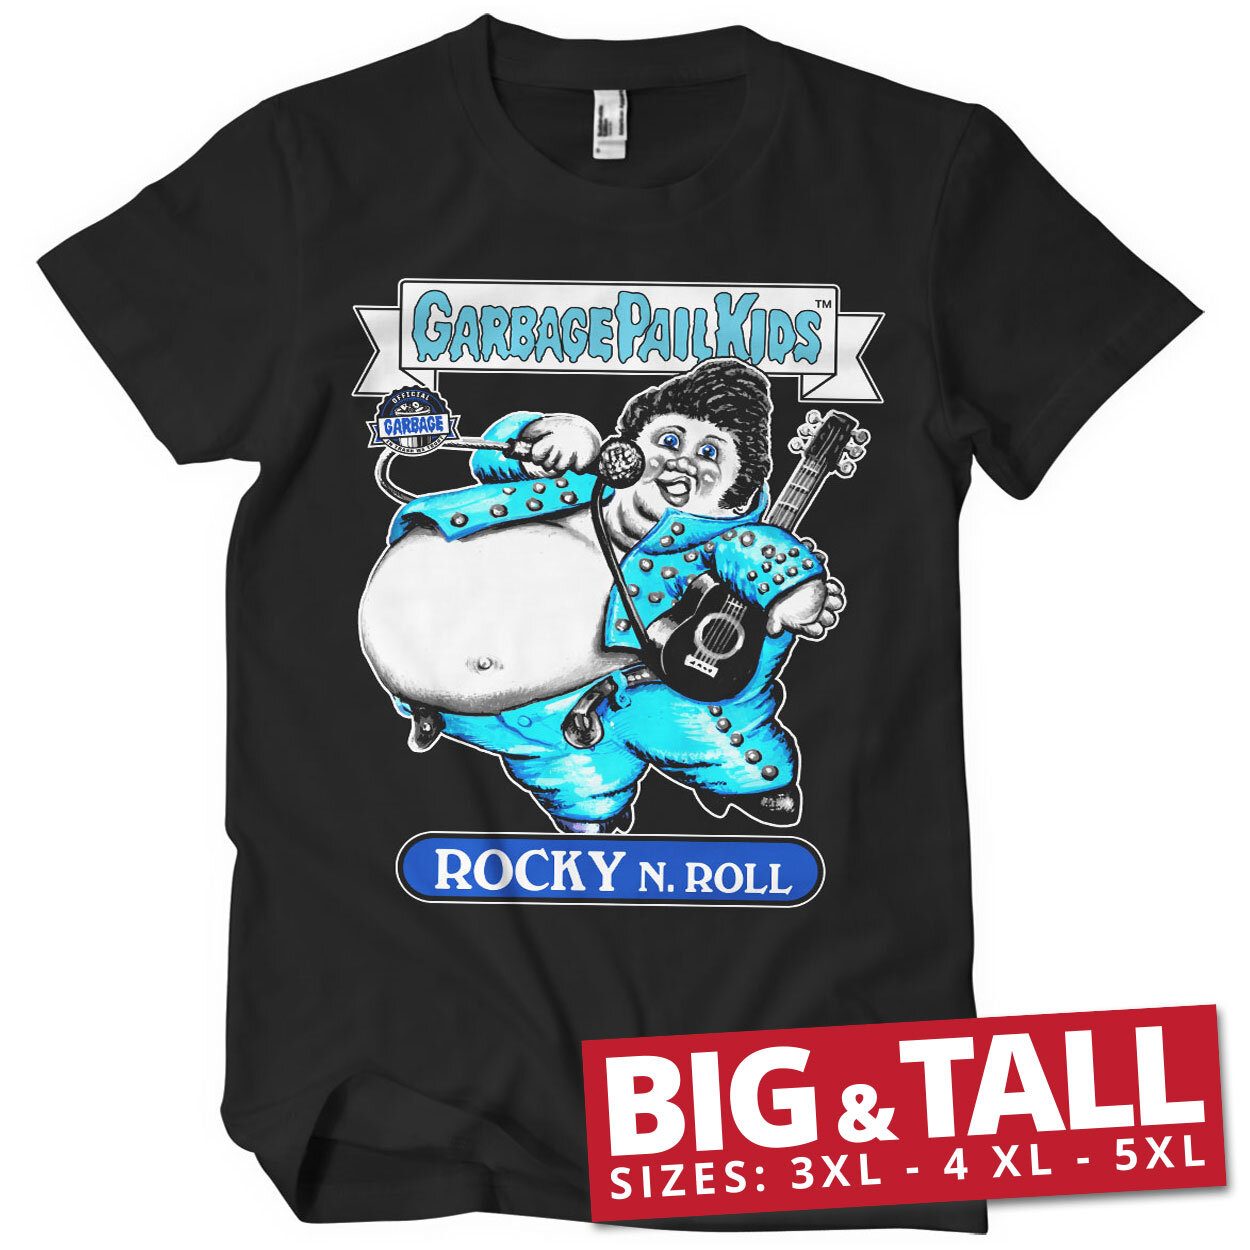 Rocky N. Roll Big & Tall T-Shirt